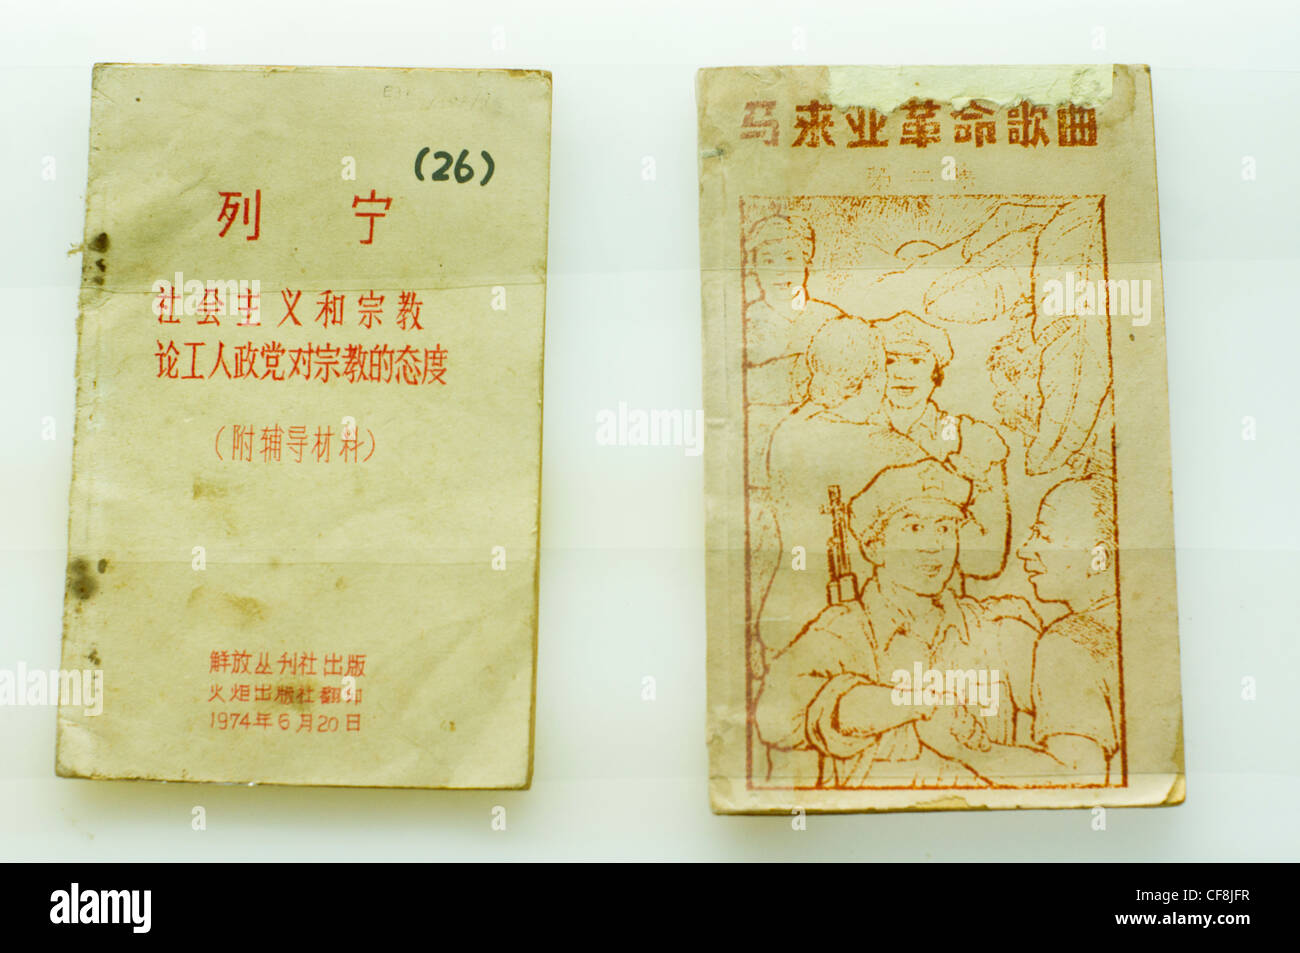 Bücher mit dem Kommunismus Unterricht in Mandarin, zirkulierten unter den chinesischen Kommunisten in Malaysia während der 70er Jahre. Stockfoto